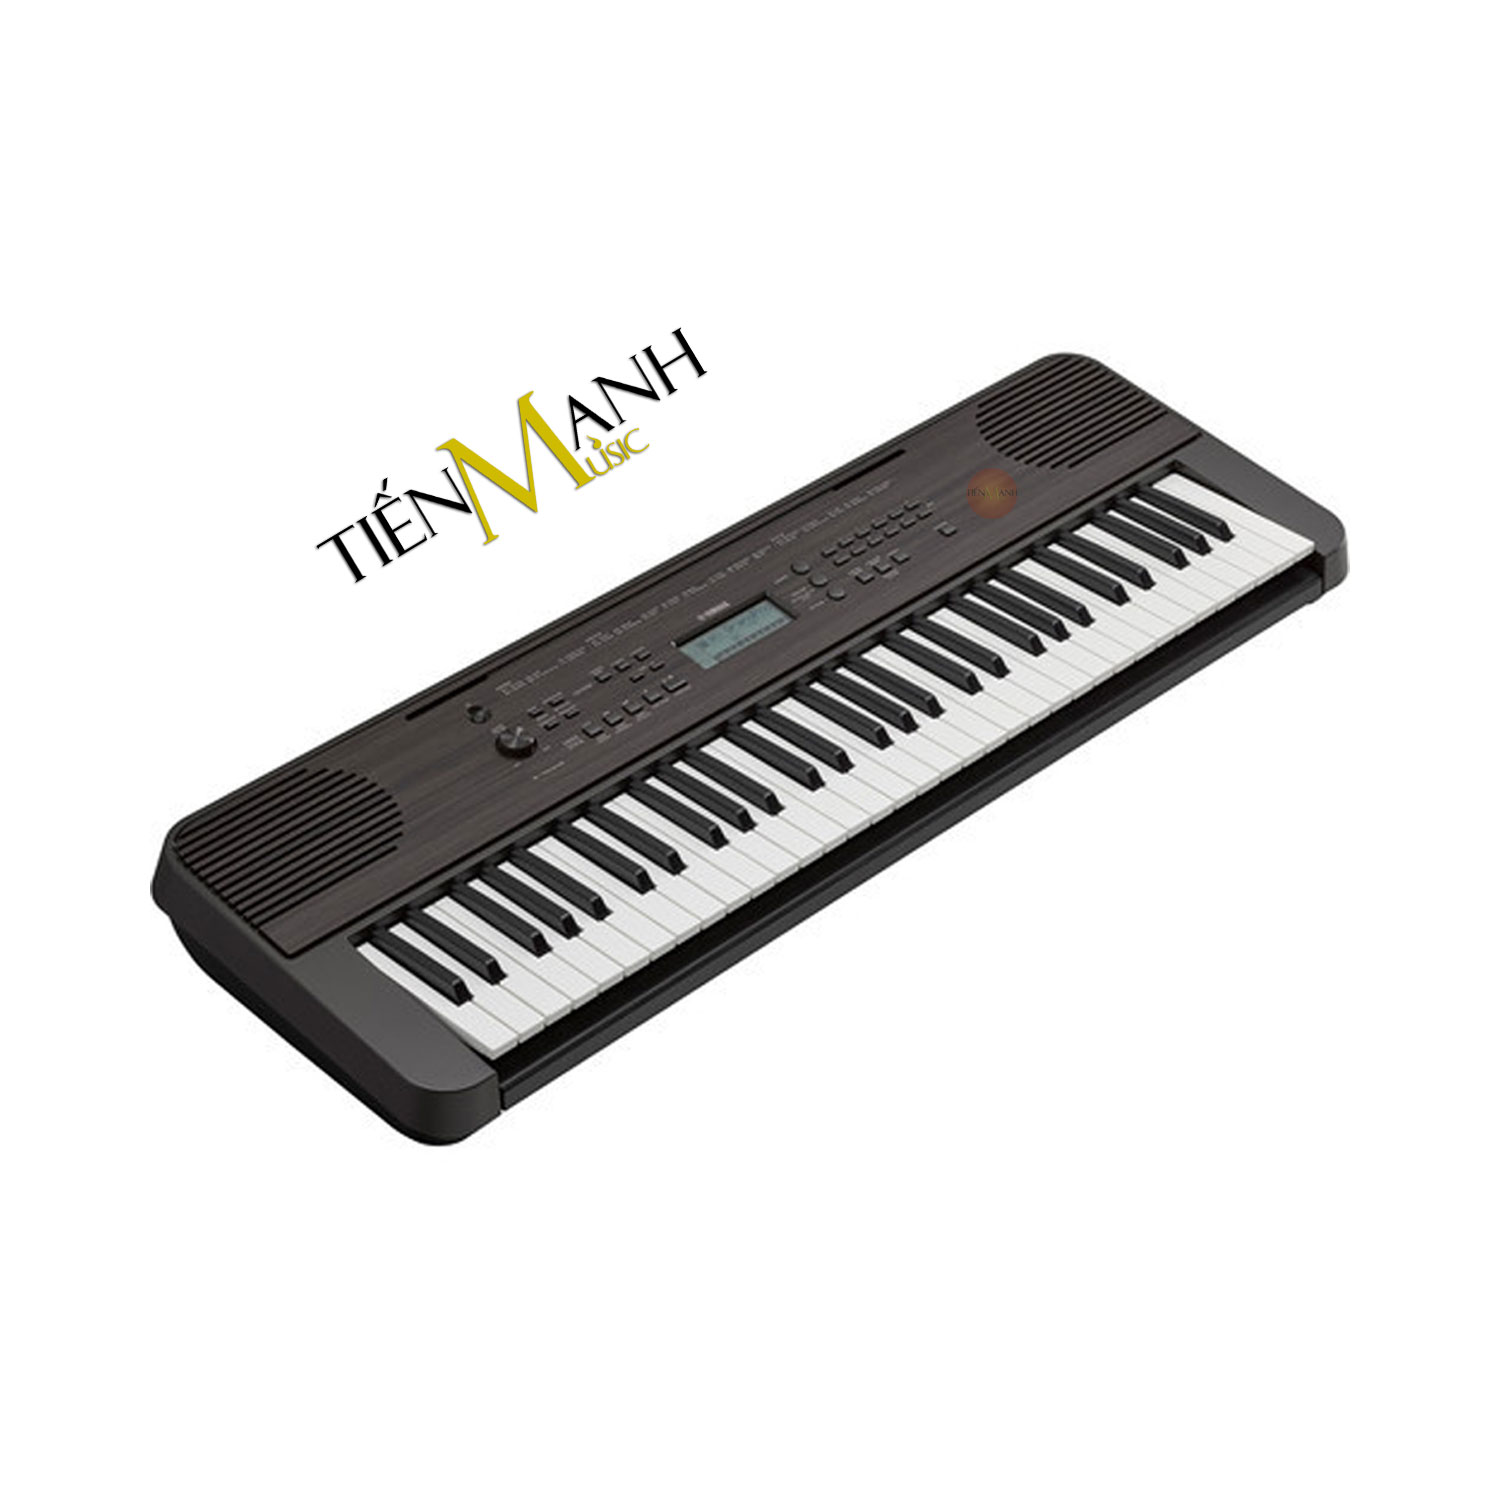 [Tặng Sticker] Bộ Đàn Organ Yamaha PSR-E360DW - Đàn, Chân, Bao, Nguồn PSR E360 E360DW - 61 Phím cảm ứng lực Keyboard Hàng Chính Hãng - Kèm Móng Gẩy DreamMaker